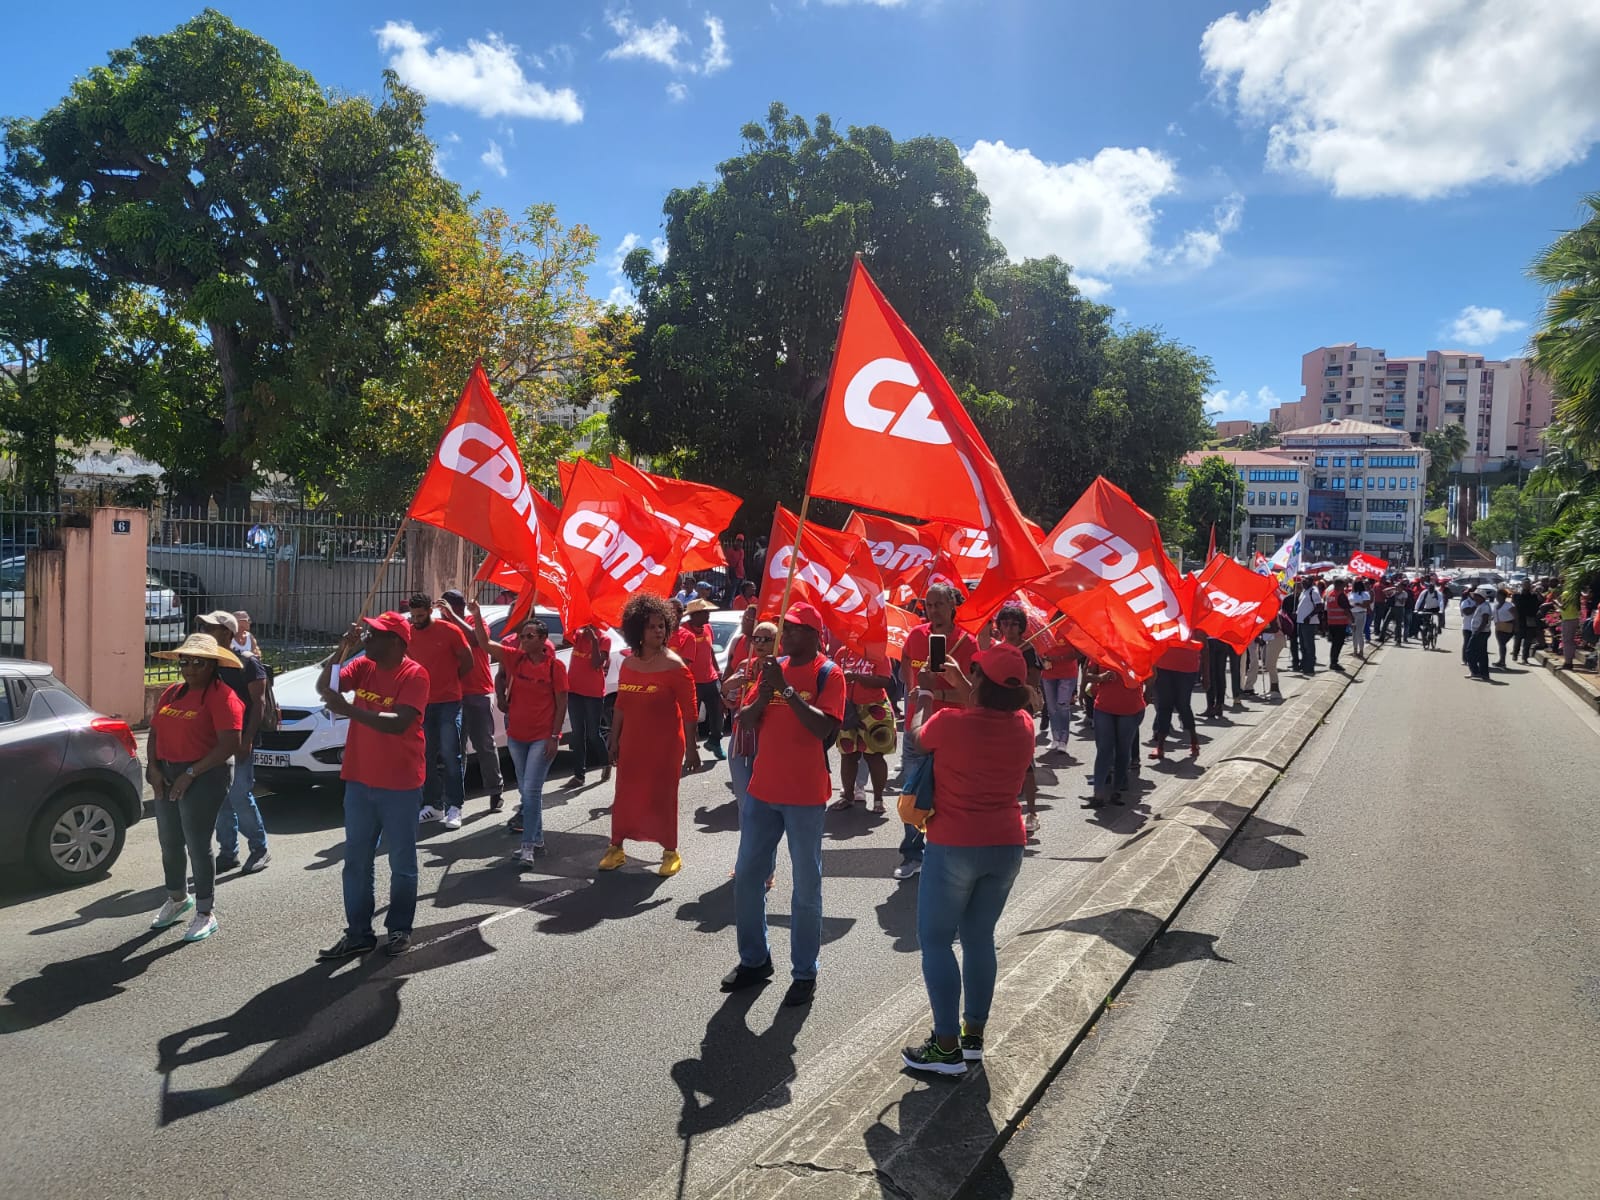     Environ 650 manifestants mobilisés à Fort-de-France contre la réforme des retraites

